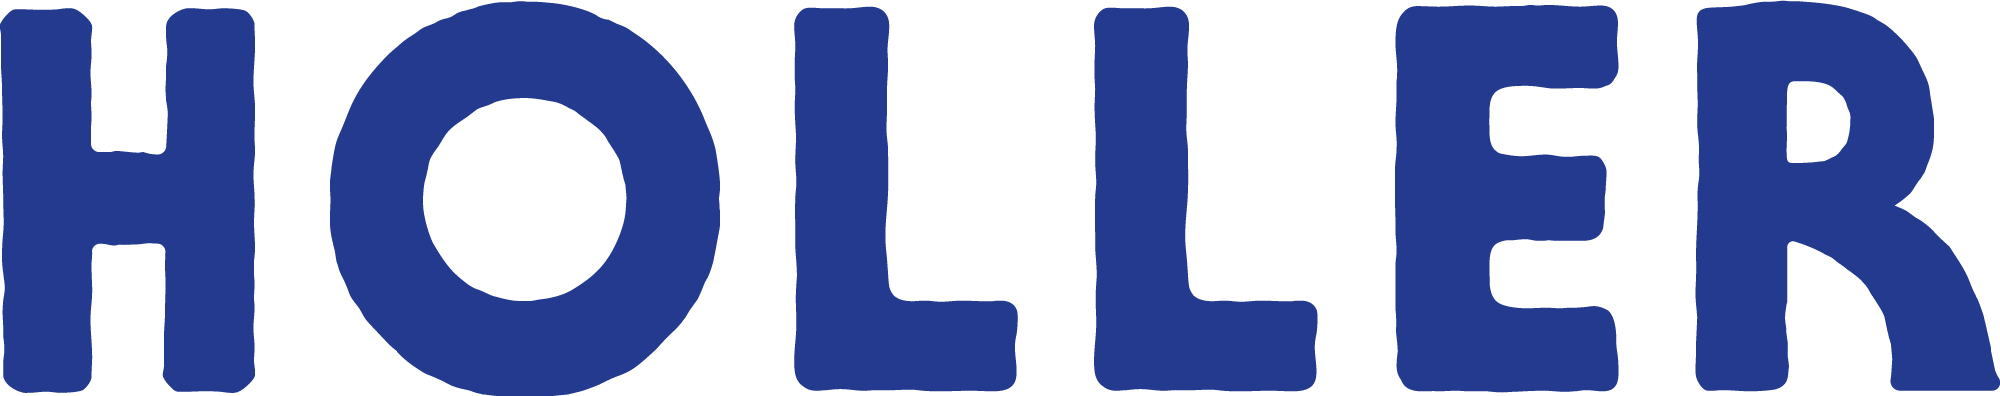 HOLLER_Logo_CMYK_Blue.png